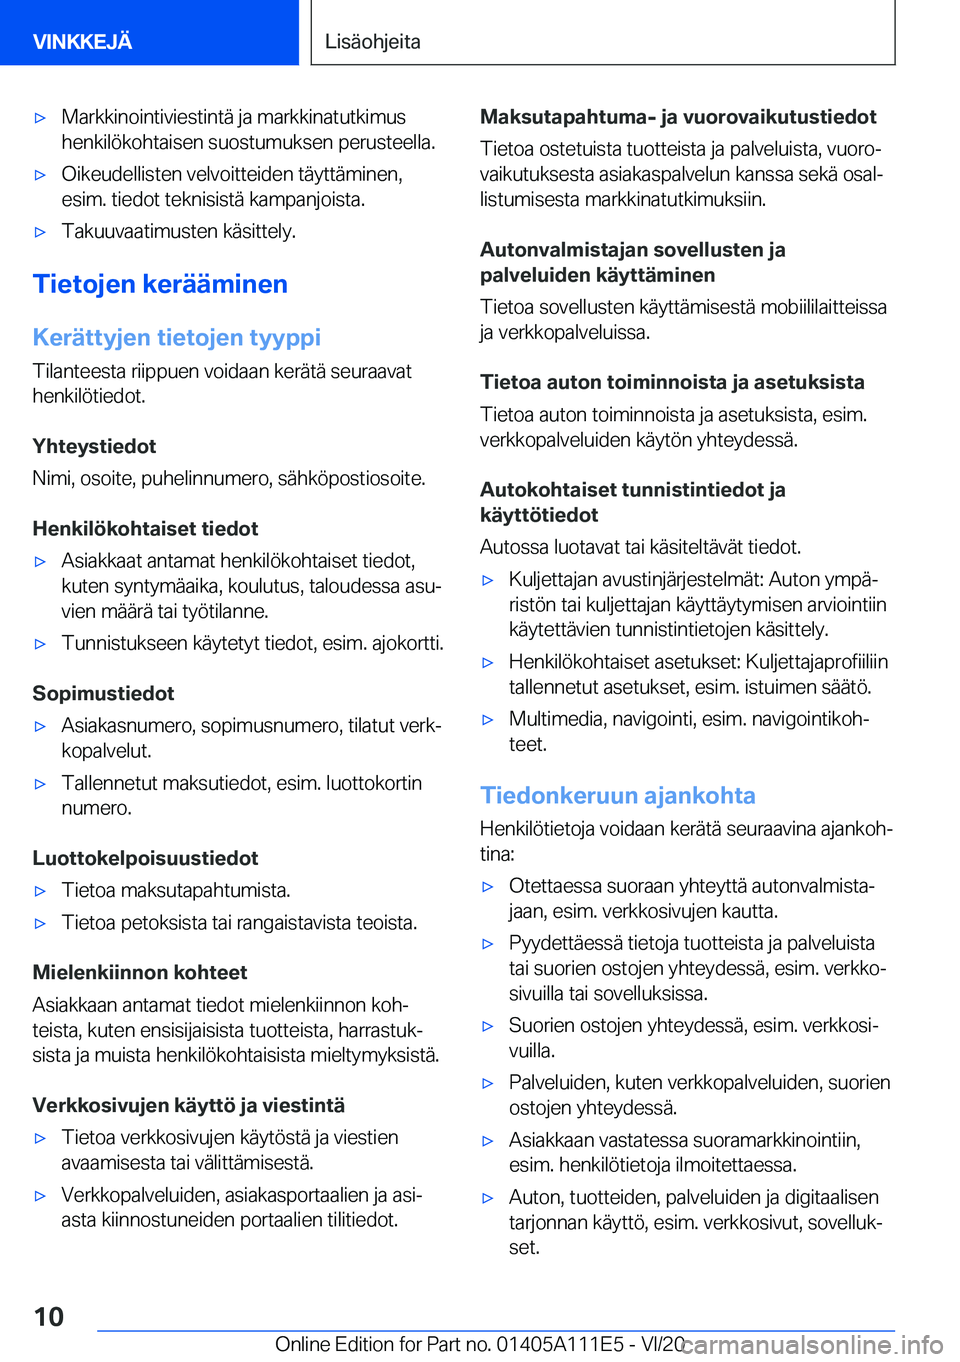 BMW 3 SERIES SEDAN PLUG-IN HYBRID 2021  Omistajan Käsikirja (in Finnish) 'x�M�a�r�k�k�i�n�o�i�n�t�i�v�i�e�s�t�i�n�t�